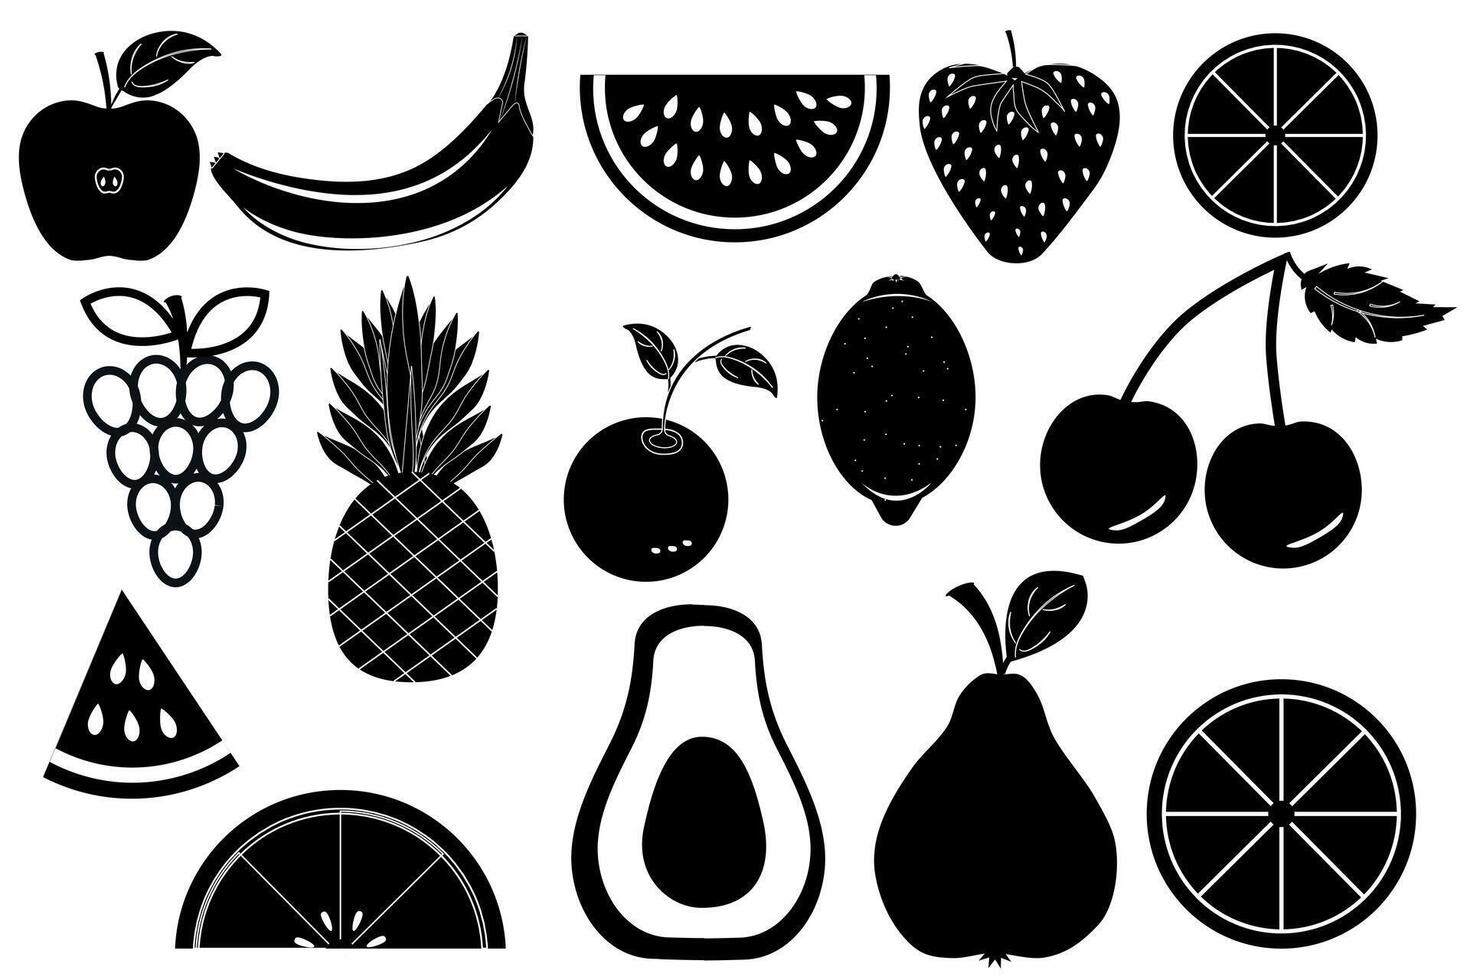 reeks van vector pictogrammen van divers fruit en bessen. verzameling van vitamine illustraties, vegetarisch symbolen, fruit silhouetten in zwart.